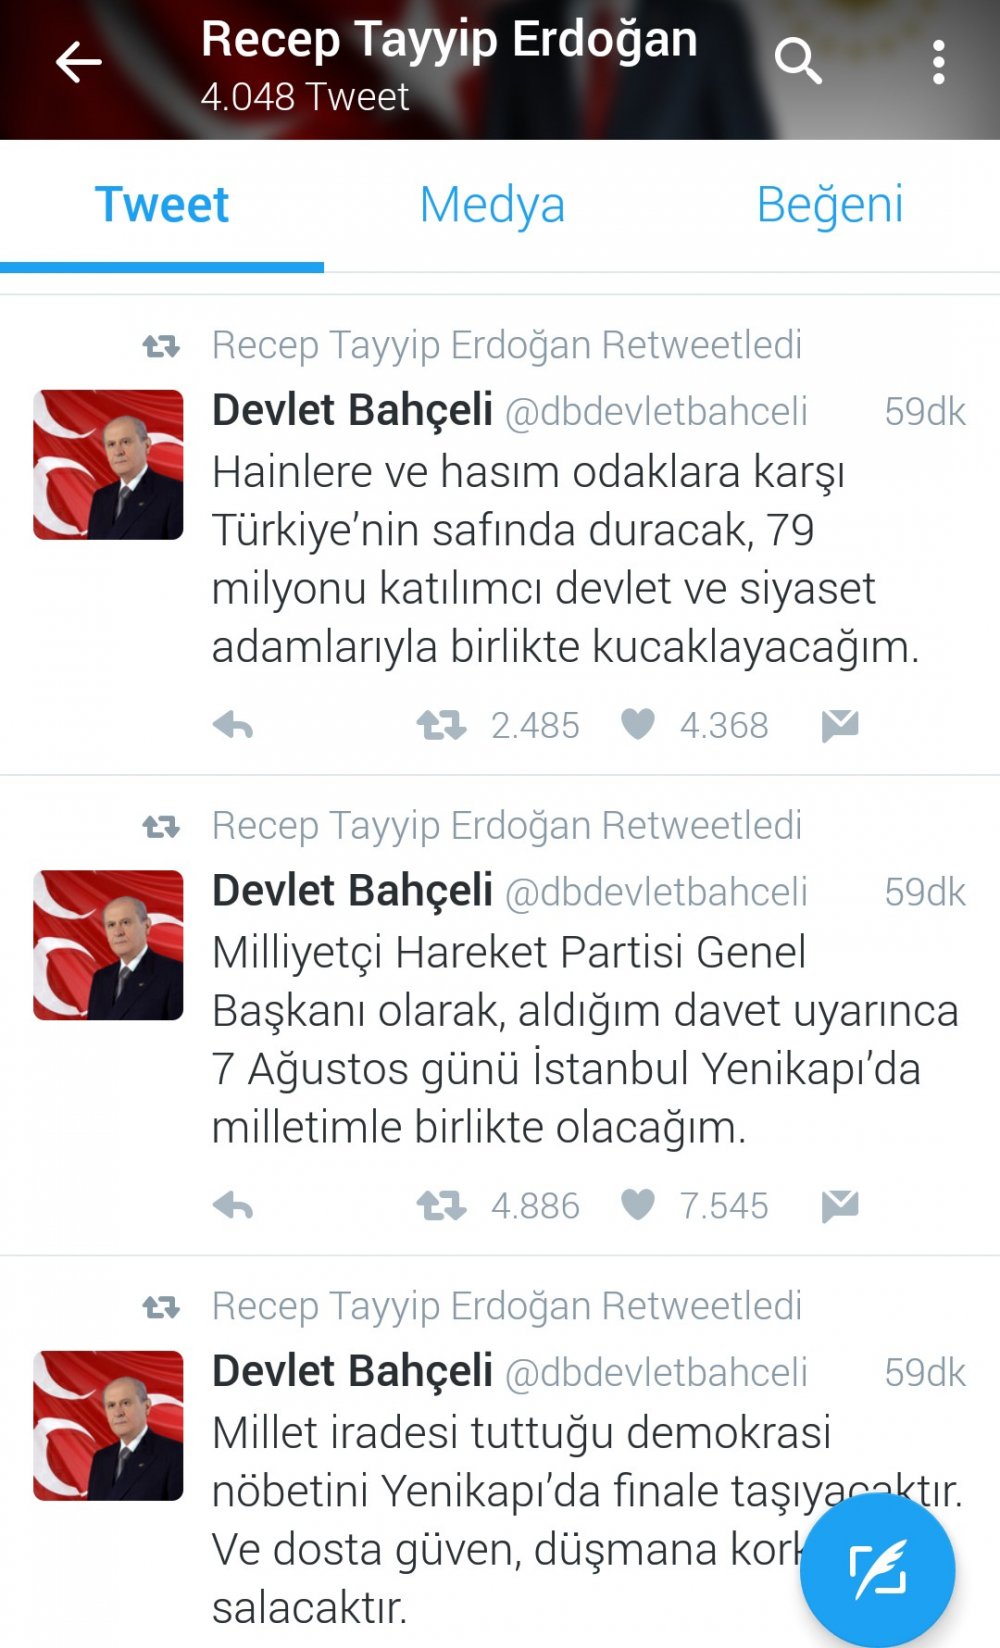 Erdoğan, Devlet Bahçeli’yi retweetledi